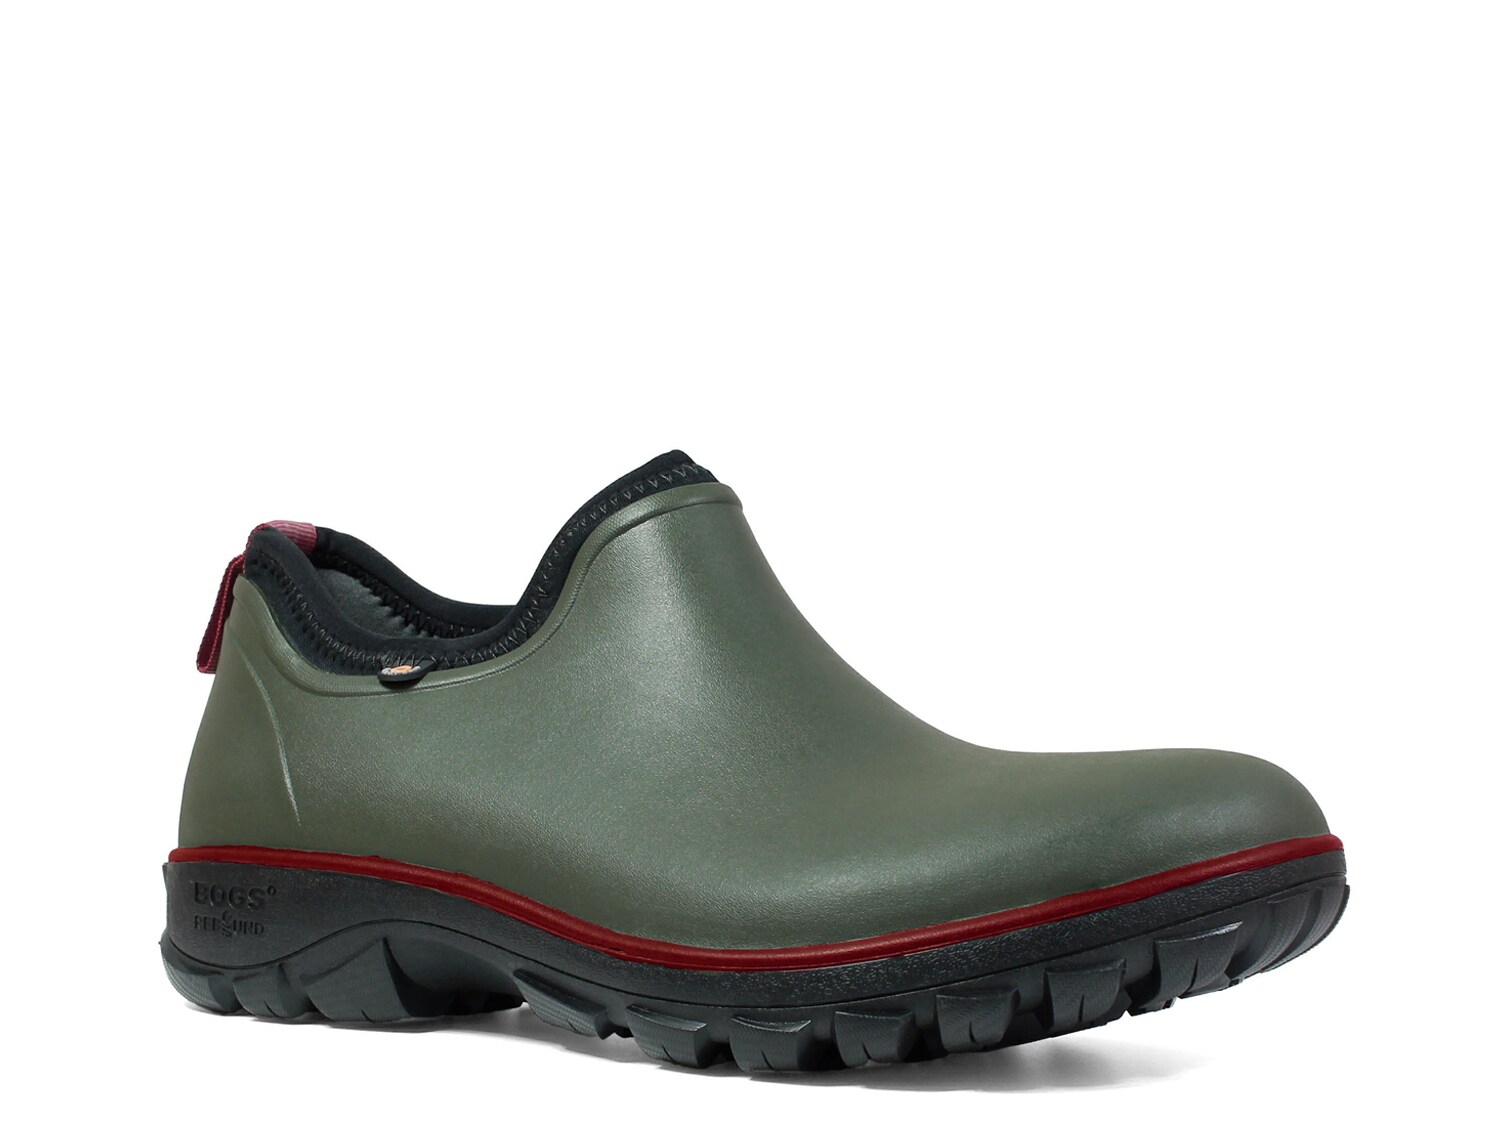 waterproof shoes dsw